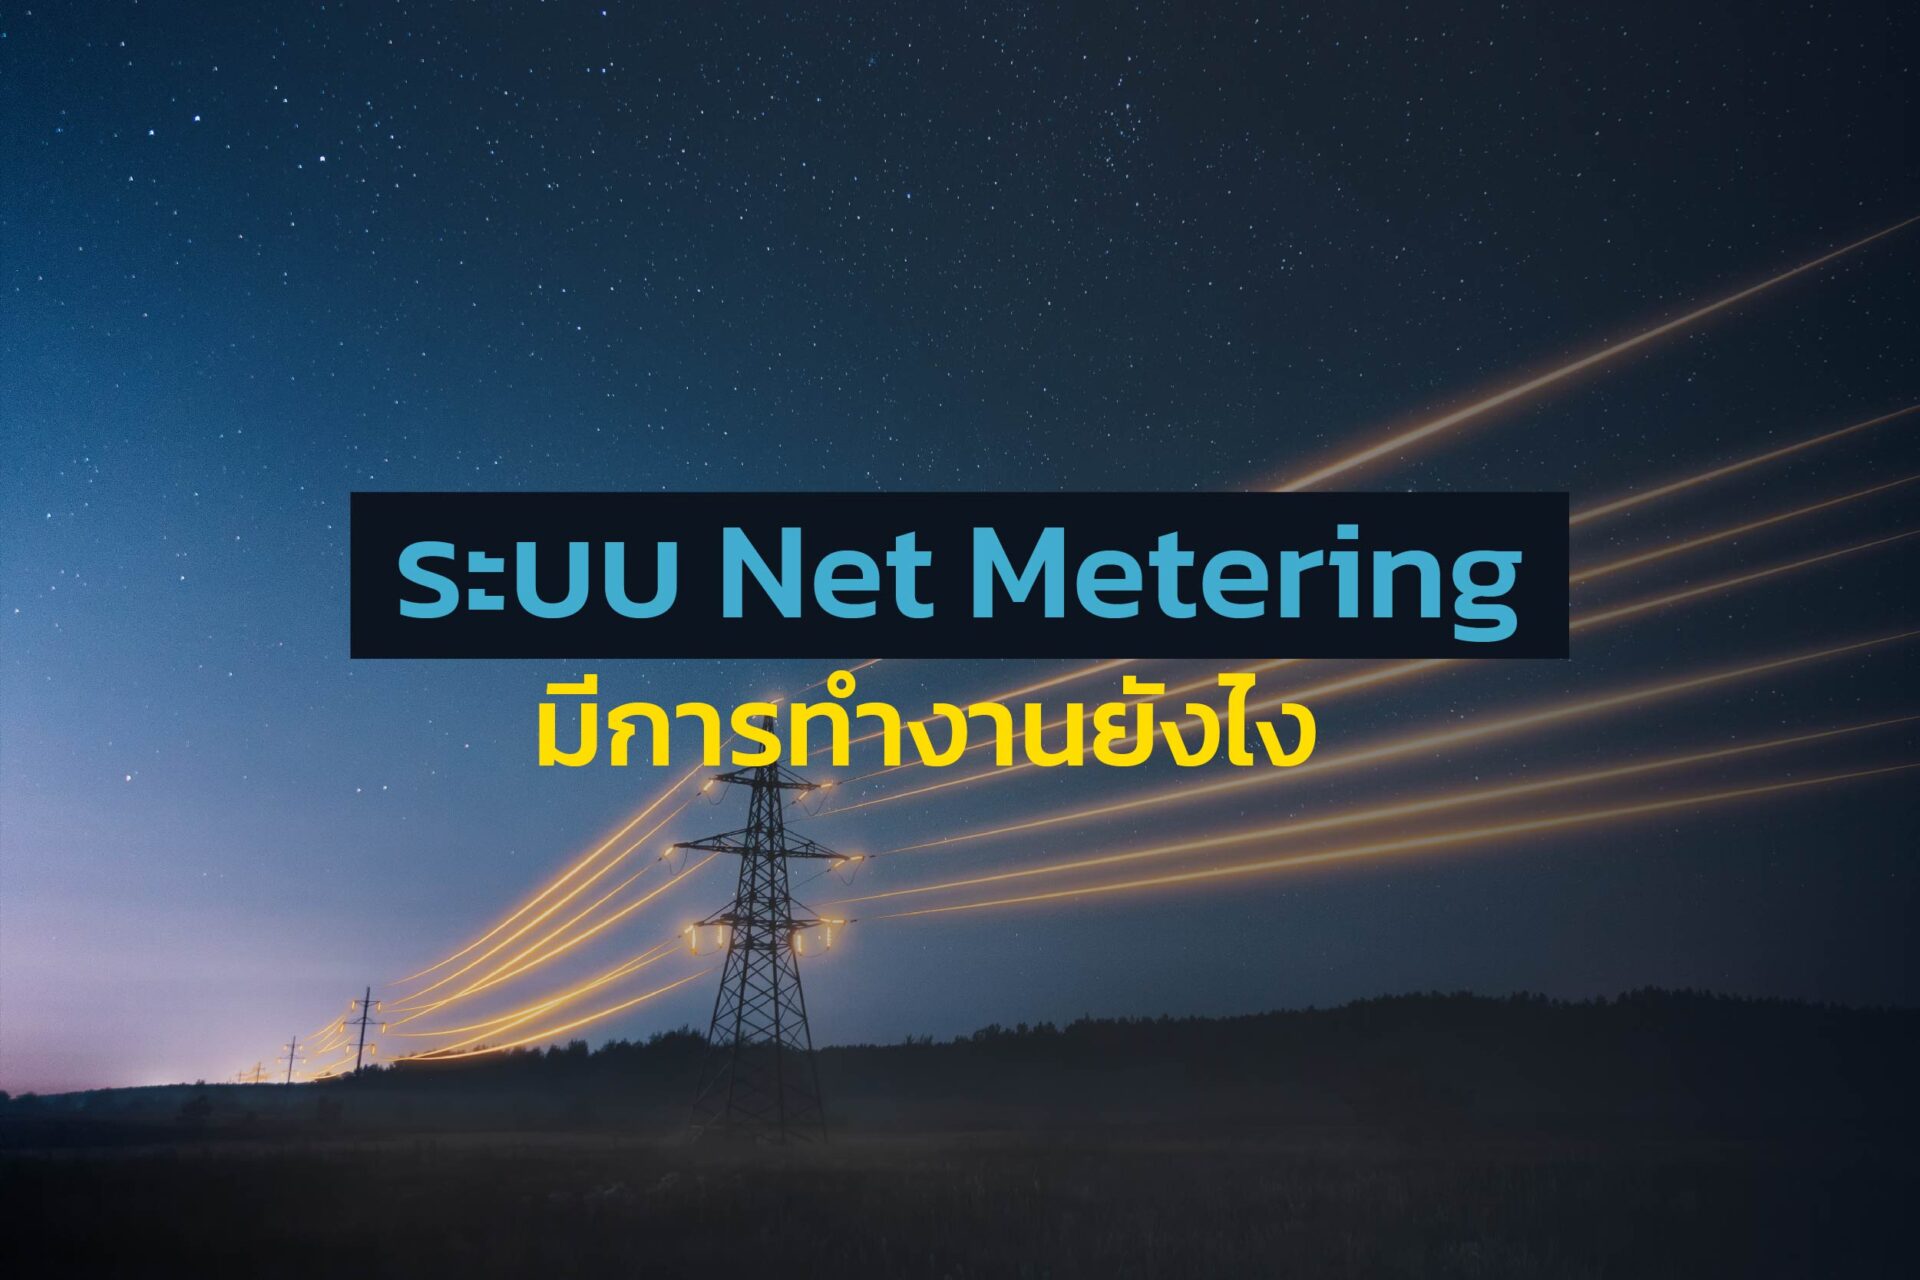 ระบบ Net Metering มีการทำงานยังไง